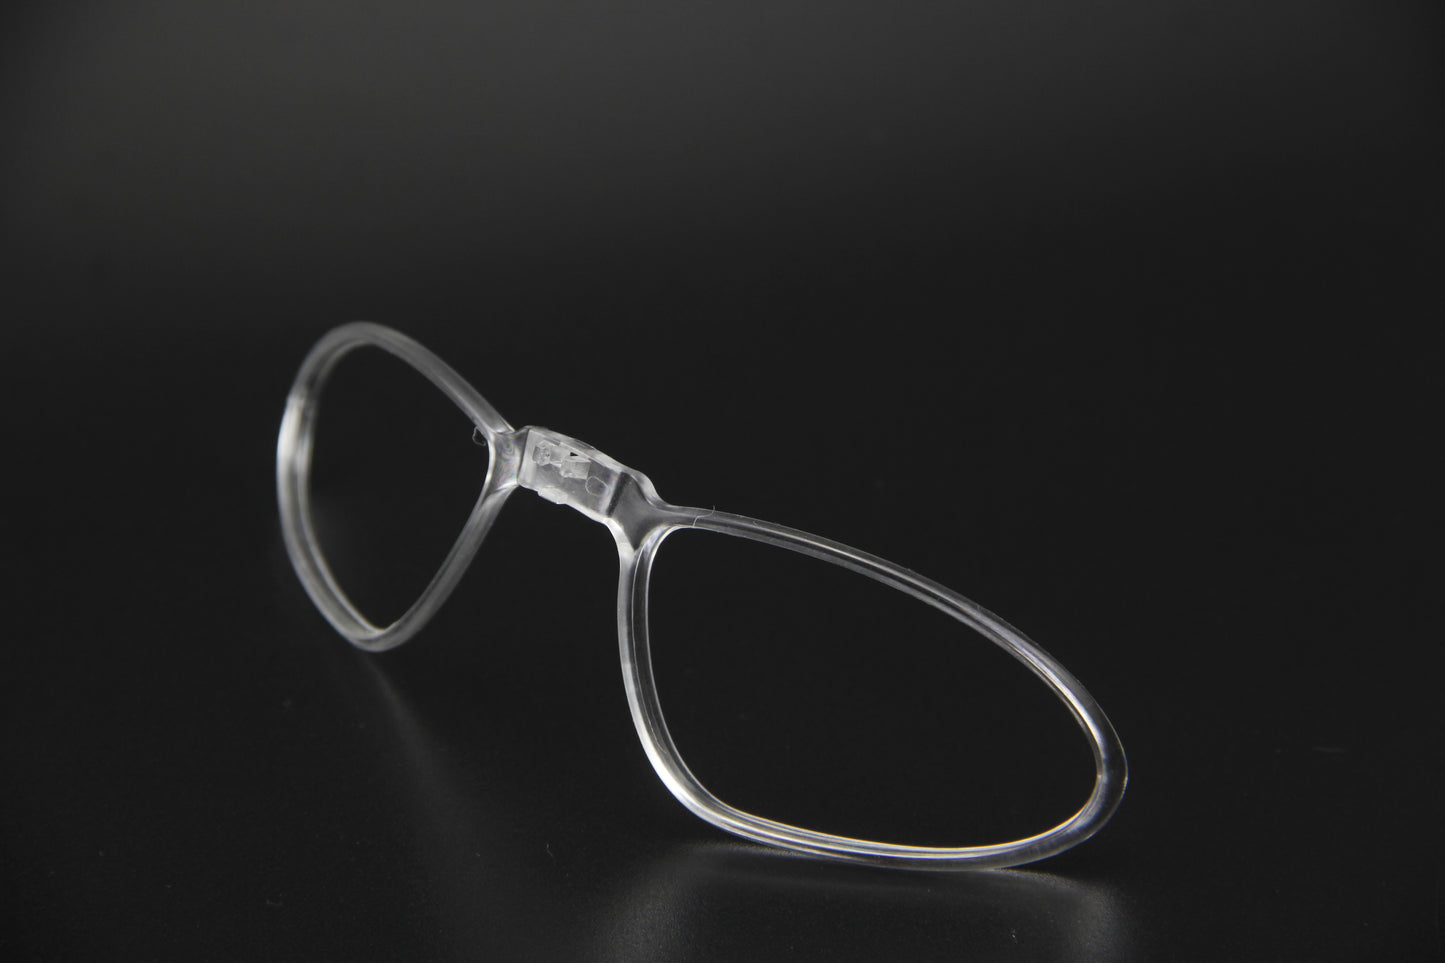 <transcy>Acessórios de lente extra QE48 para óculos de ciclismo esportivo</transcy>